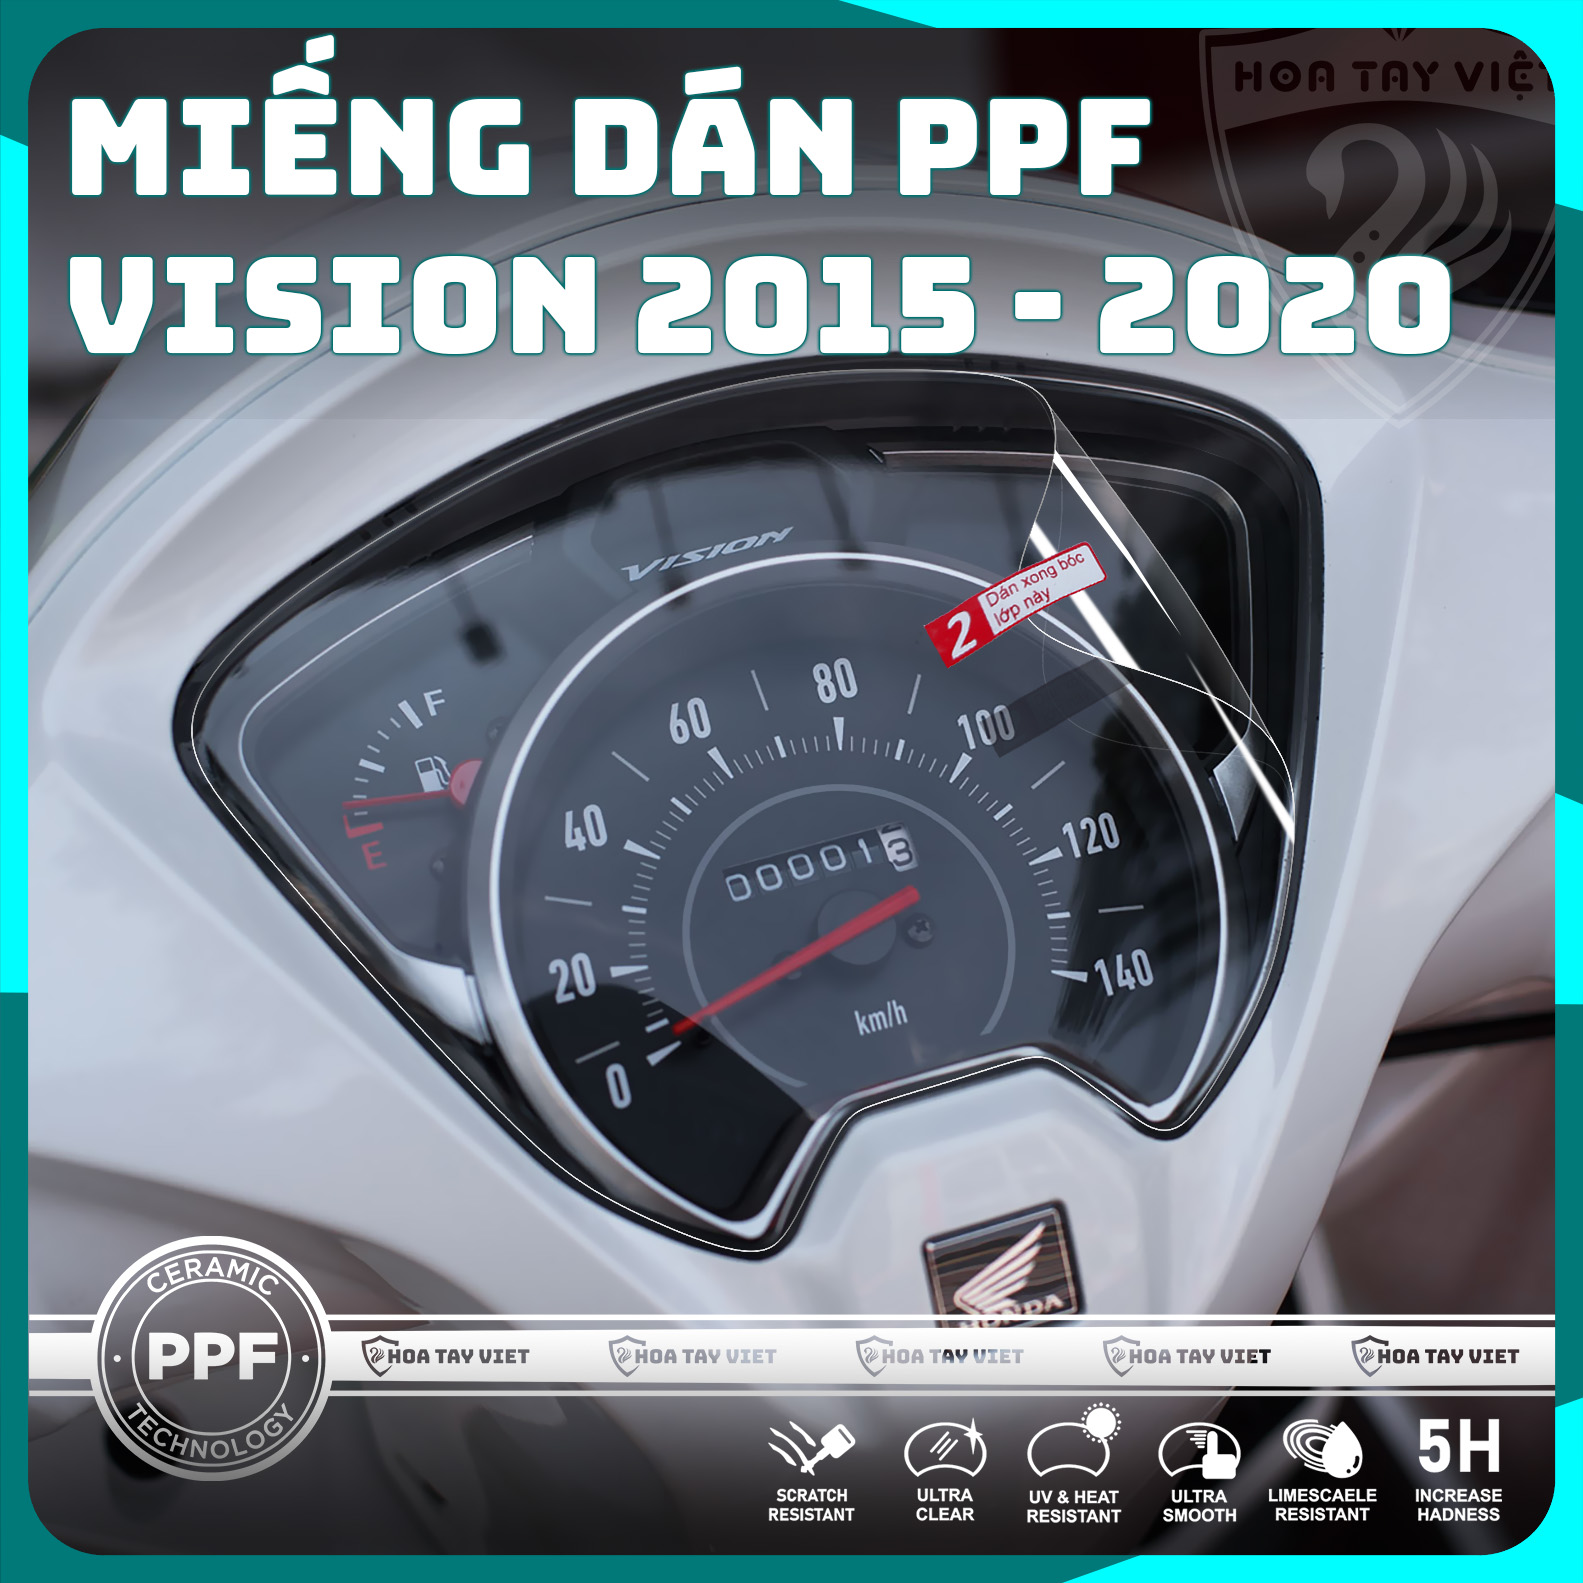 PPF bảo vệ mặt đồng hồ Vision 2015 - 2020 cao cấp chống trầy xước màn hình xe honda Vision 2015 - 2020